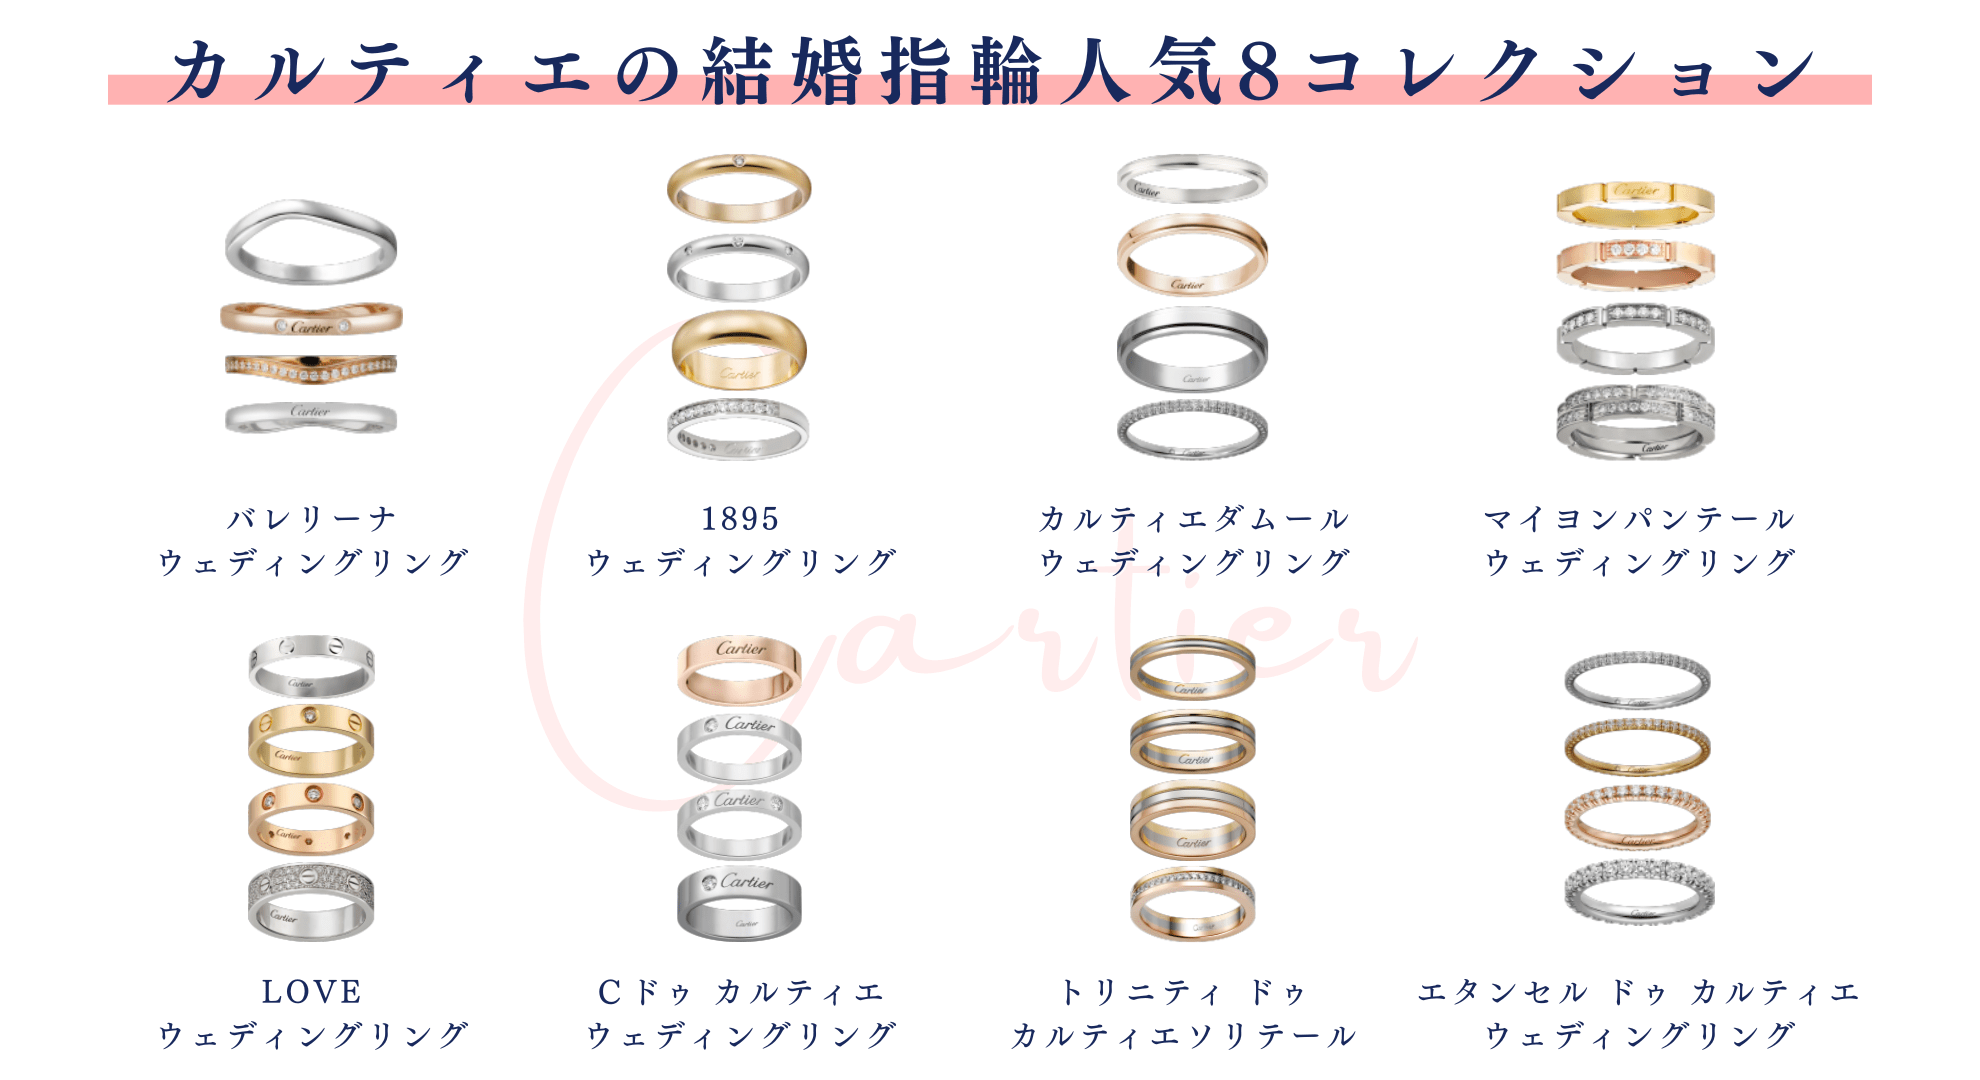 男性146300円カルティエ ペアリング 結婚指輪 プラチナ